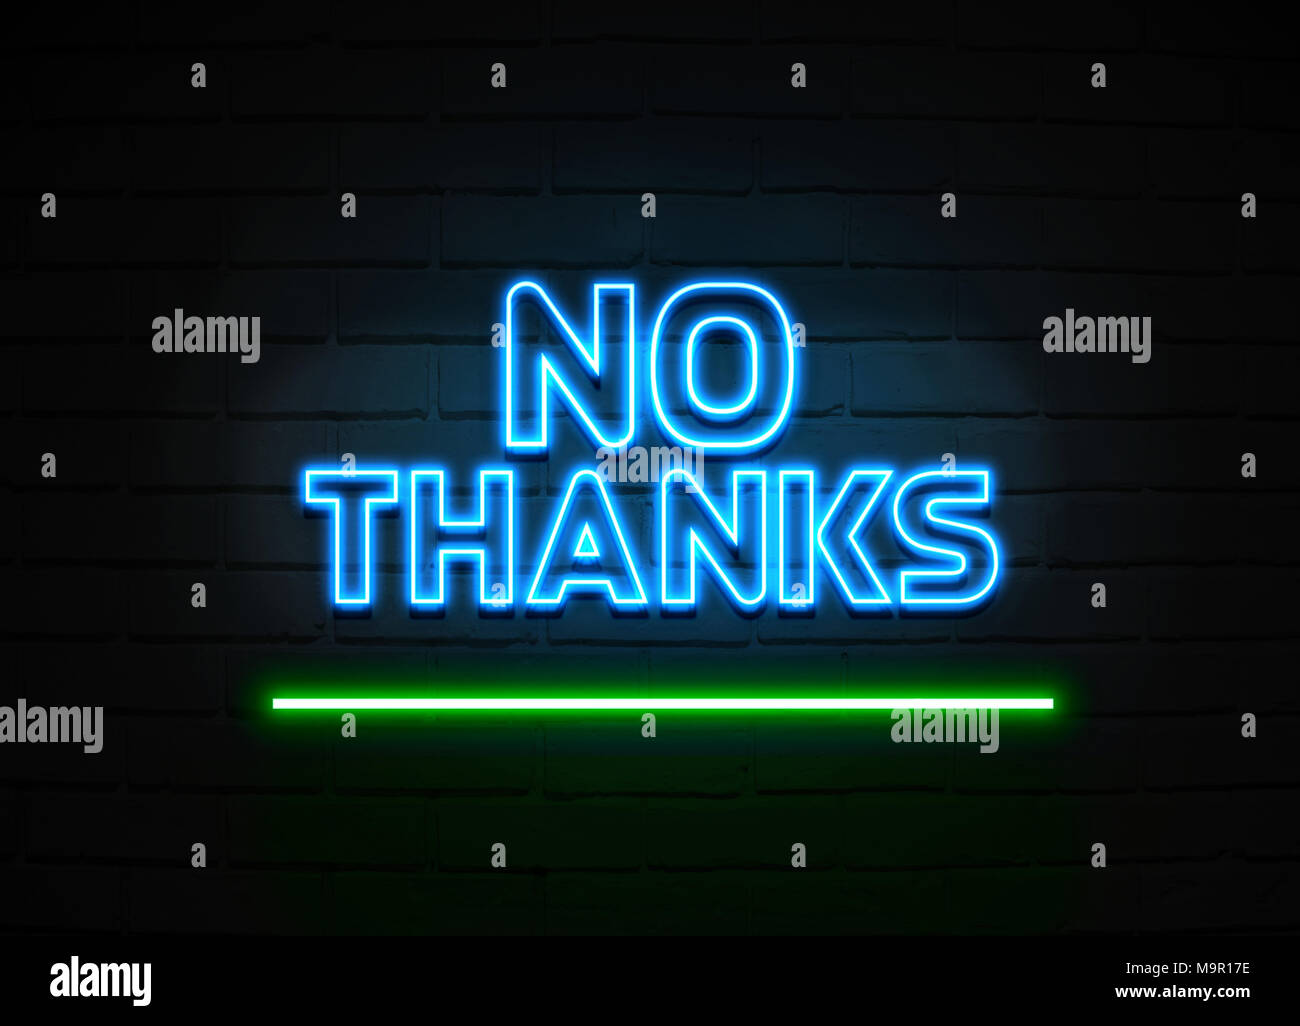 Nein danke Neon Sign - glühende Leuchtreklame auf brickwall Wand - 3D-Royalty Free Stock Illustration dargestellt. Stockfoto